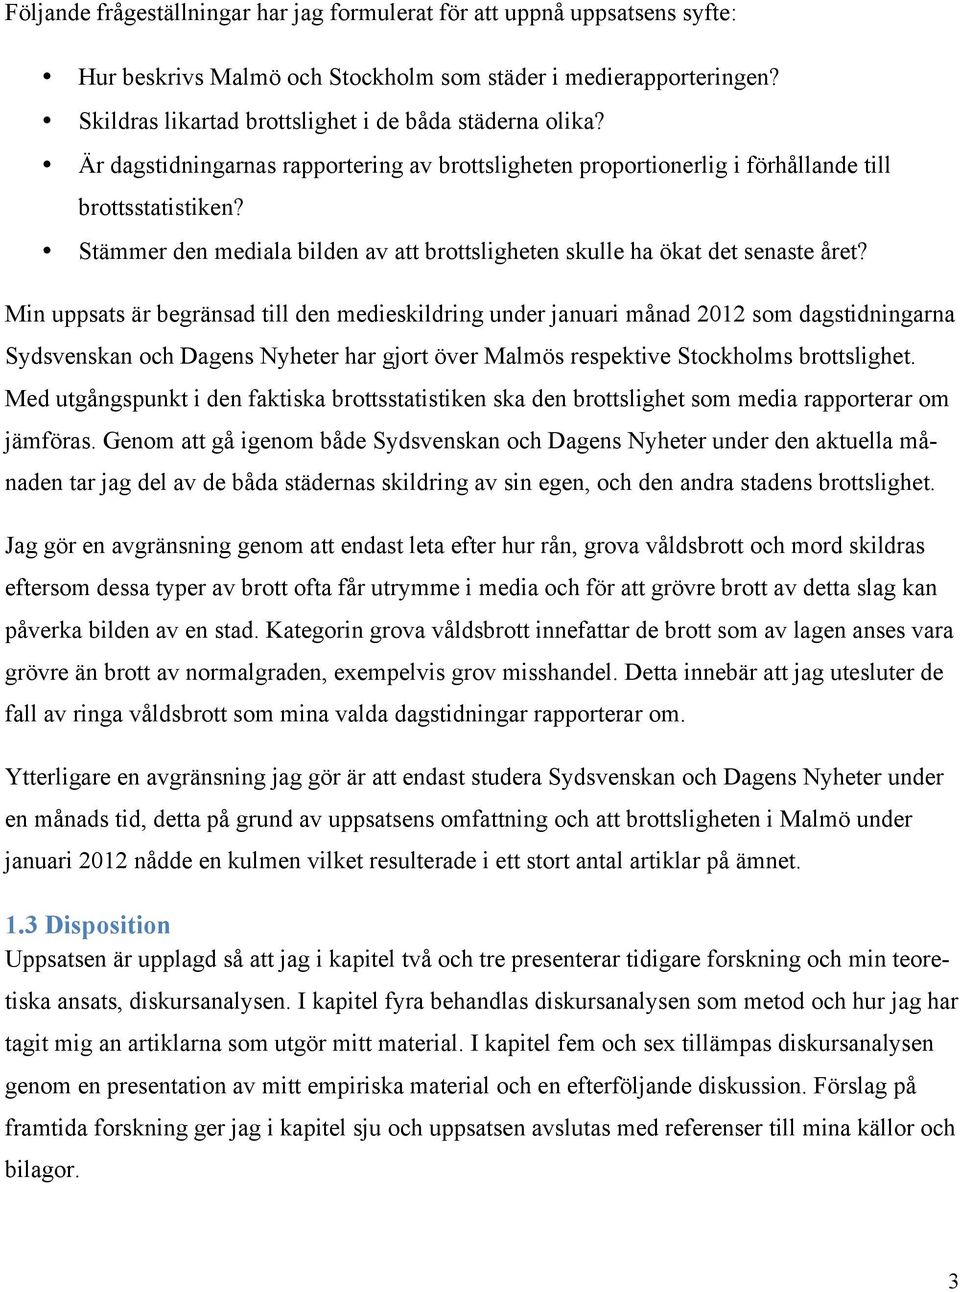 Min uppsats är begränsad till den medieskildring under januari månad 2012 som dagstidningarna Sydsvenskan och Dagens Nyheter har gjort över Malmös respektive Stockholms brottslighet.